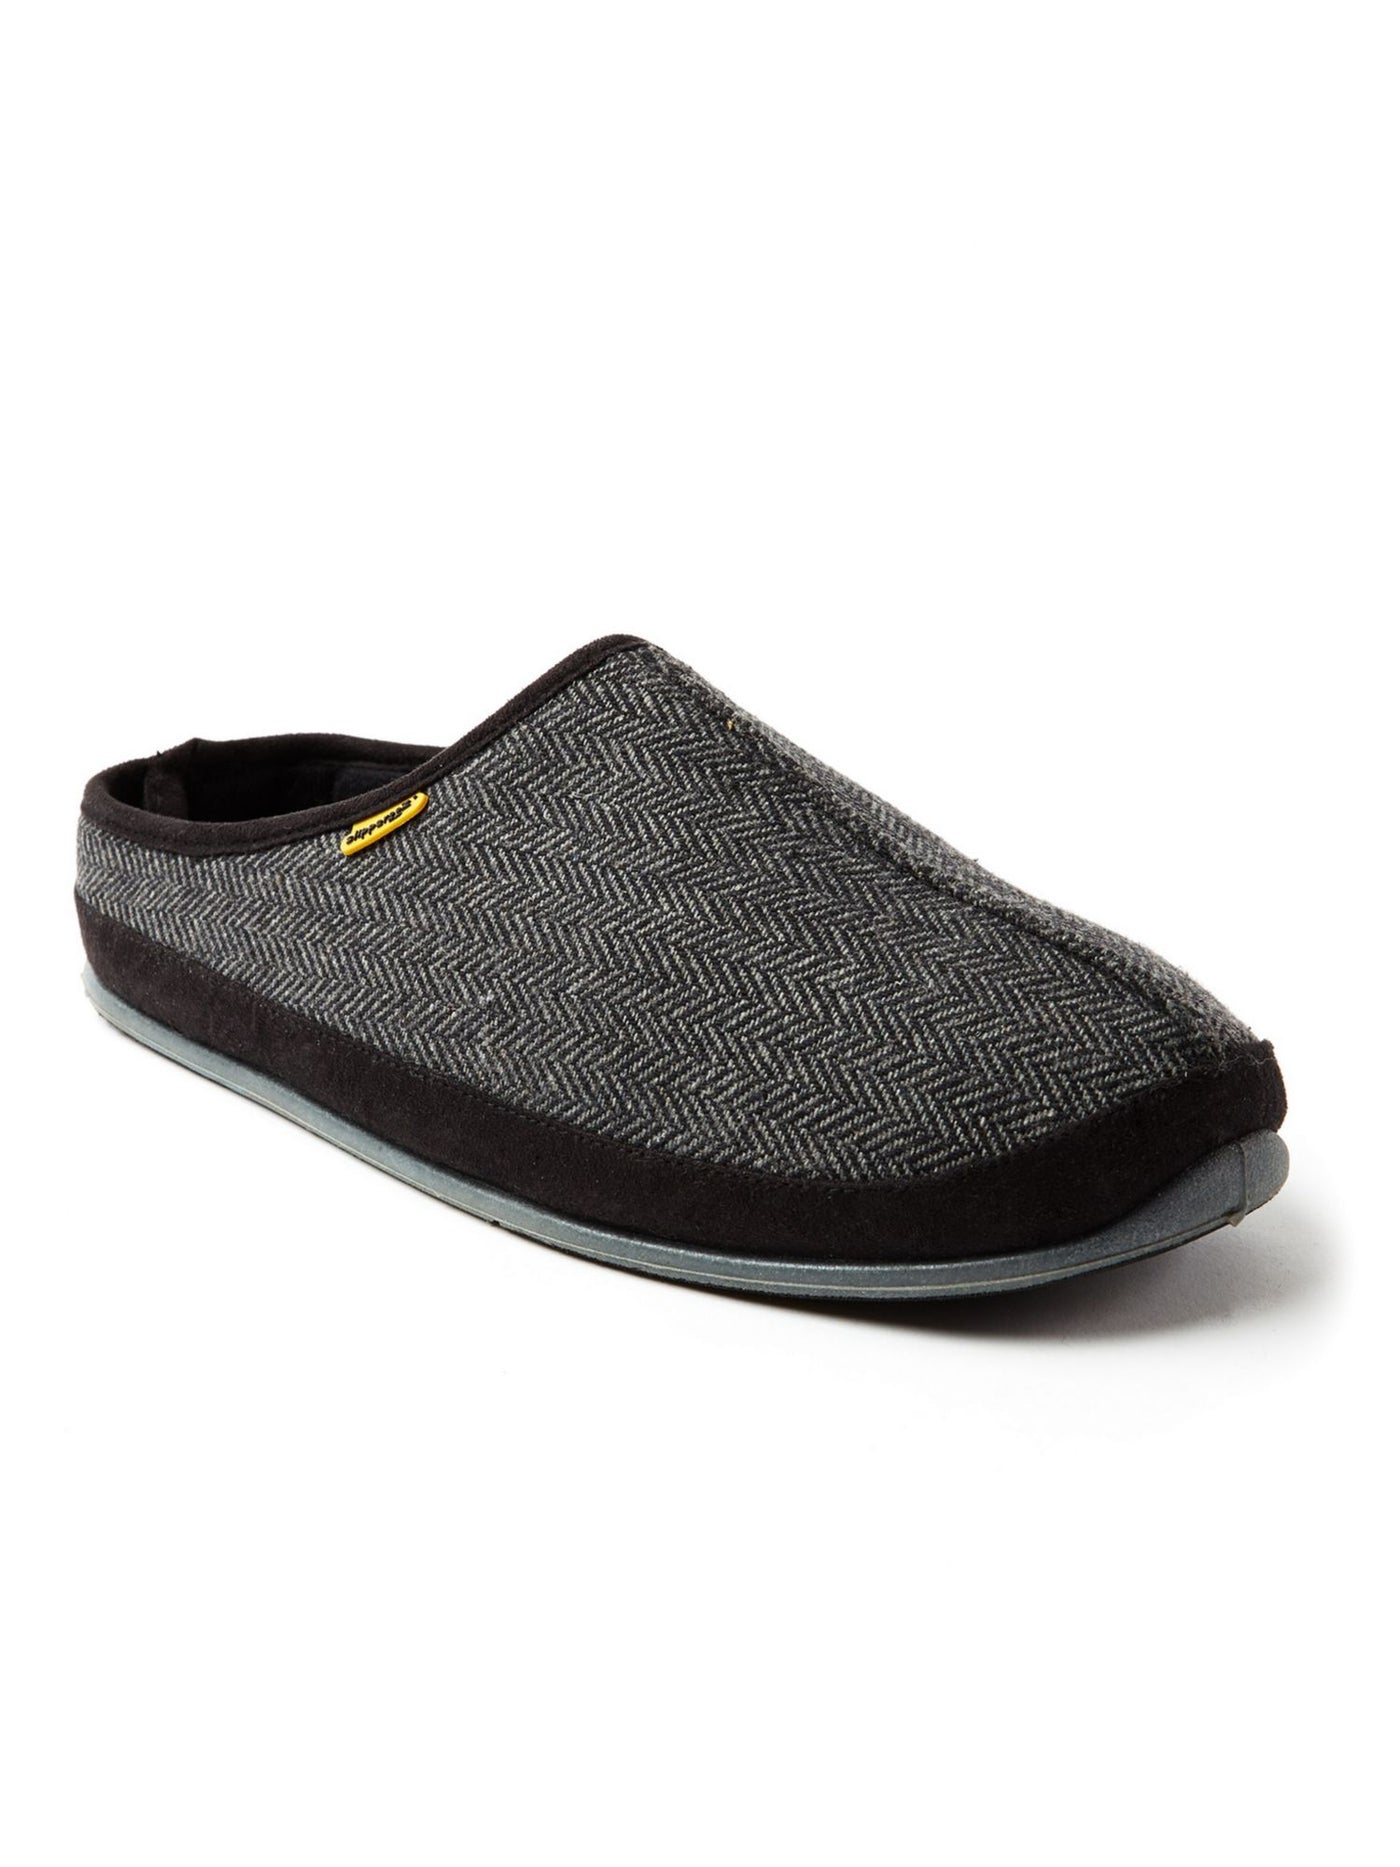 DEER STAGS SLIPPEROOZ Mens Black Herringbone Padded Comfort Wherever Round Toe Platform Slip On Slippers Shoes 10 M